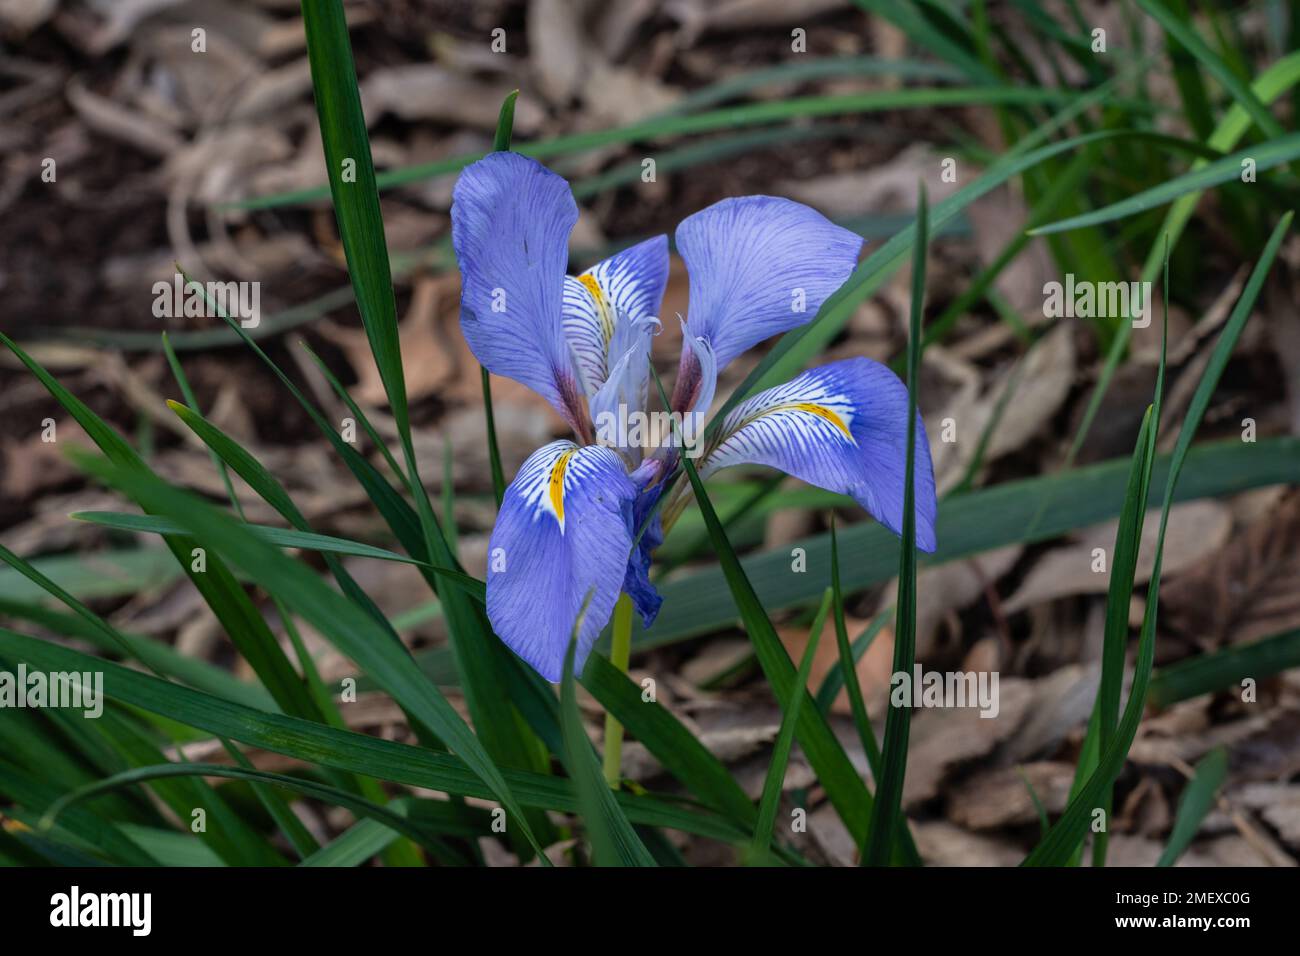 Vue rapprochée de la fleur bleue violette fraîche et jaune de l'iris unguicularis fleurant dans le jardin Banque D'Images